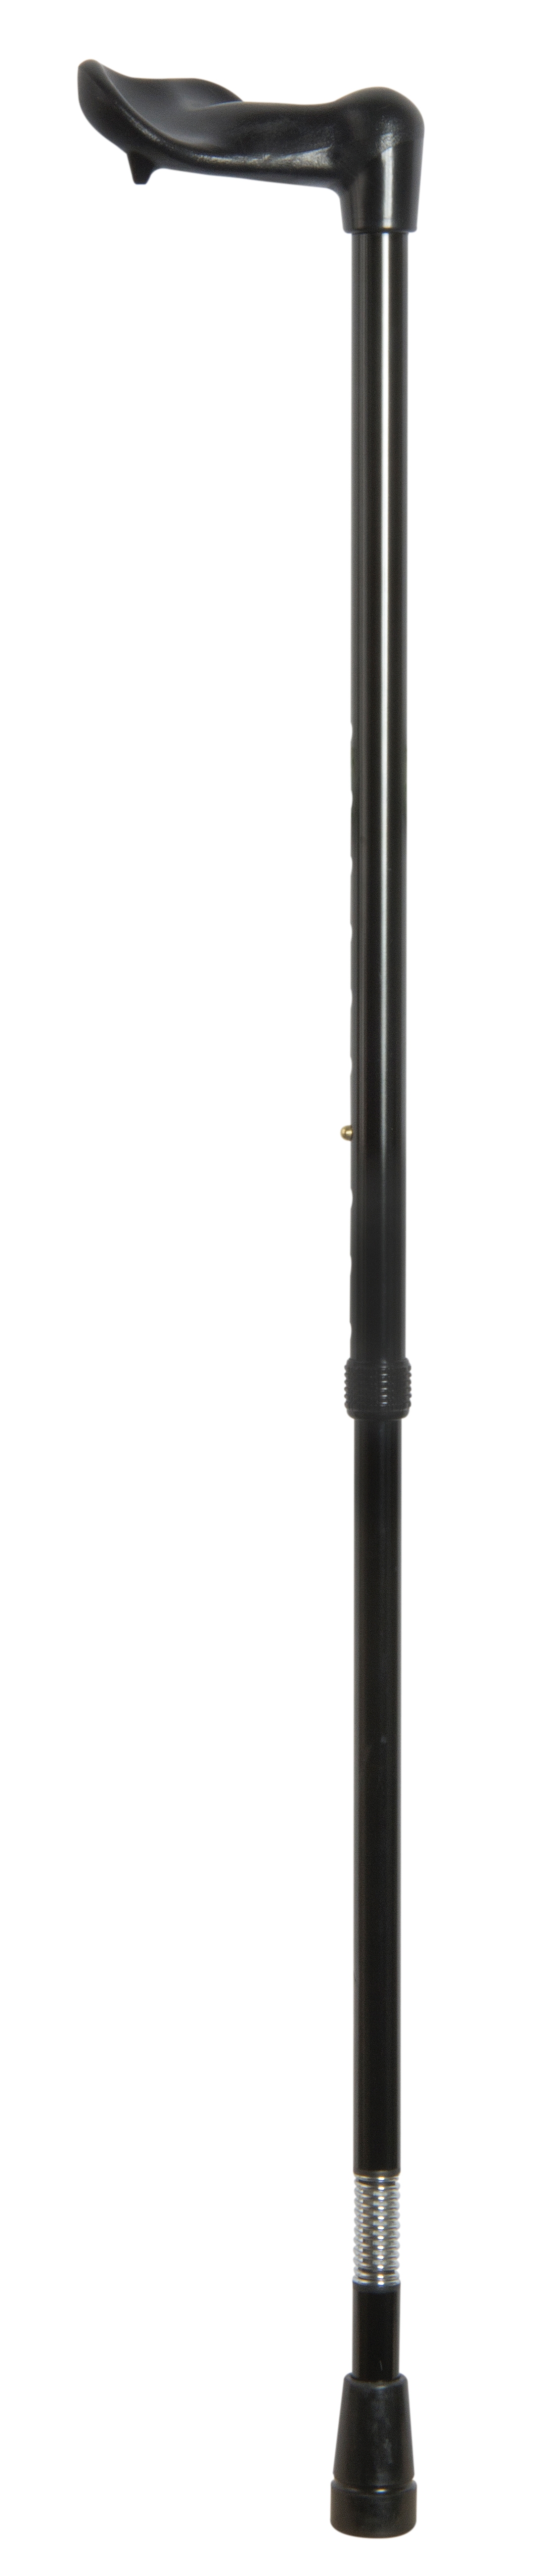 Adjustable Orthopaedic Shock Absorber Walking Stick 4609L/R